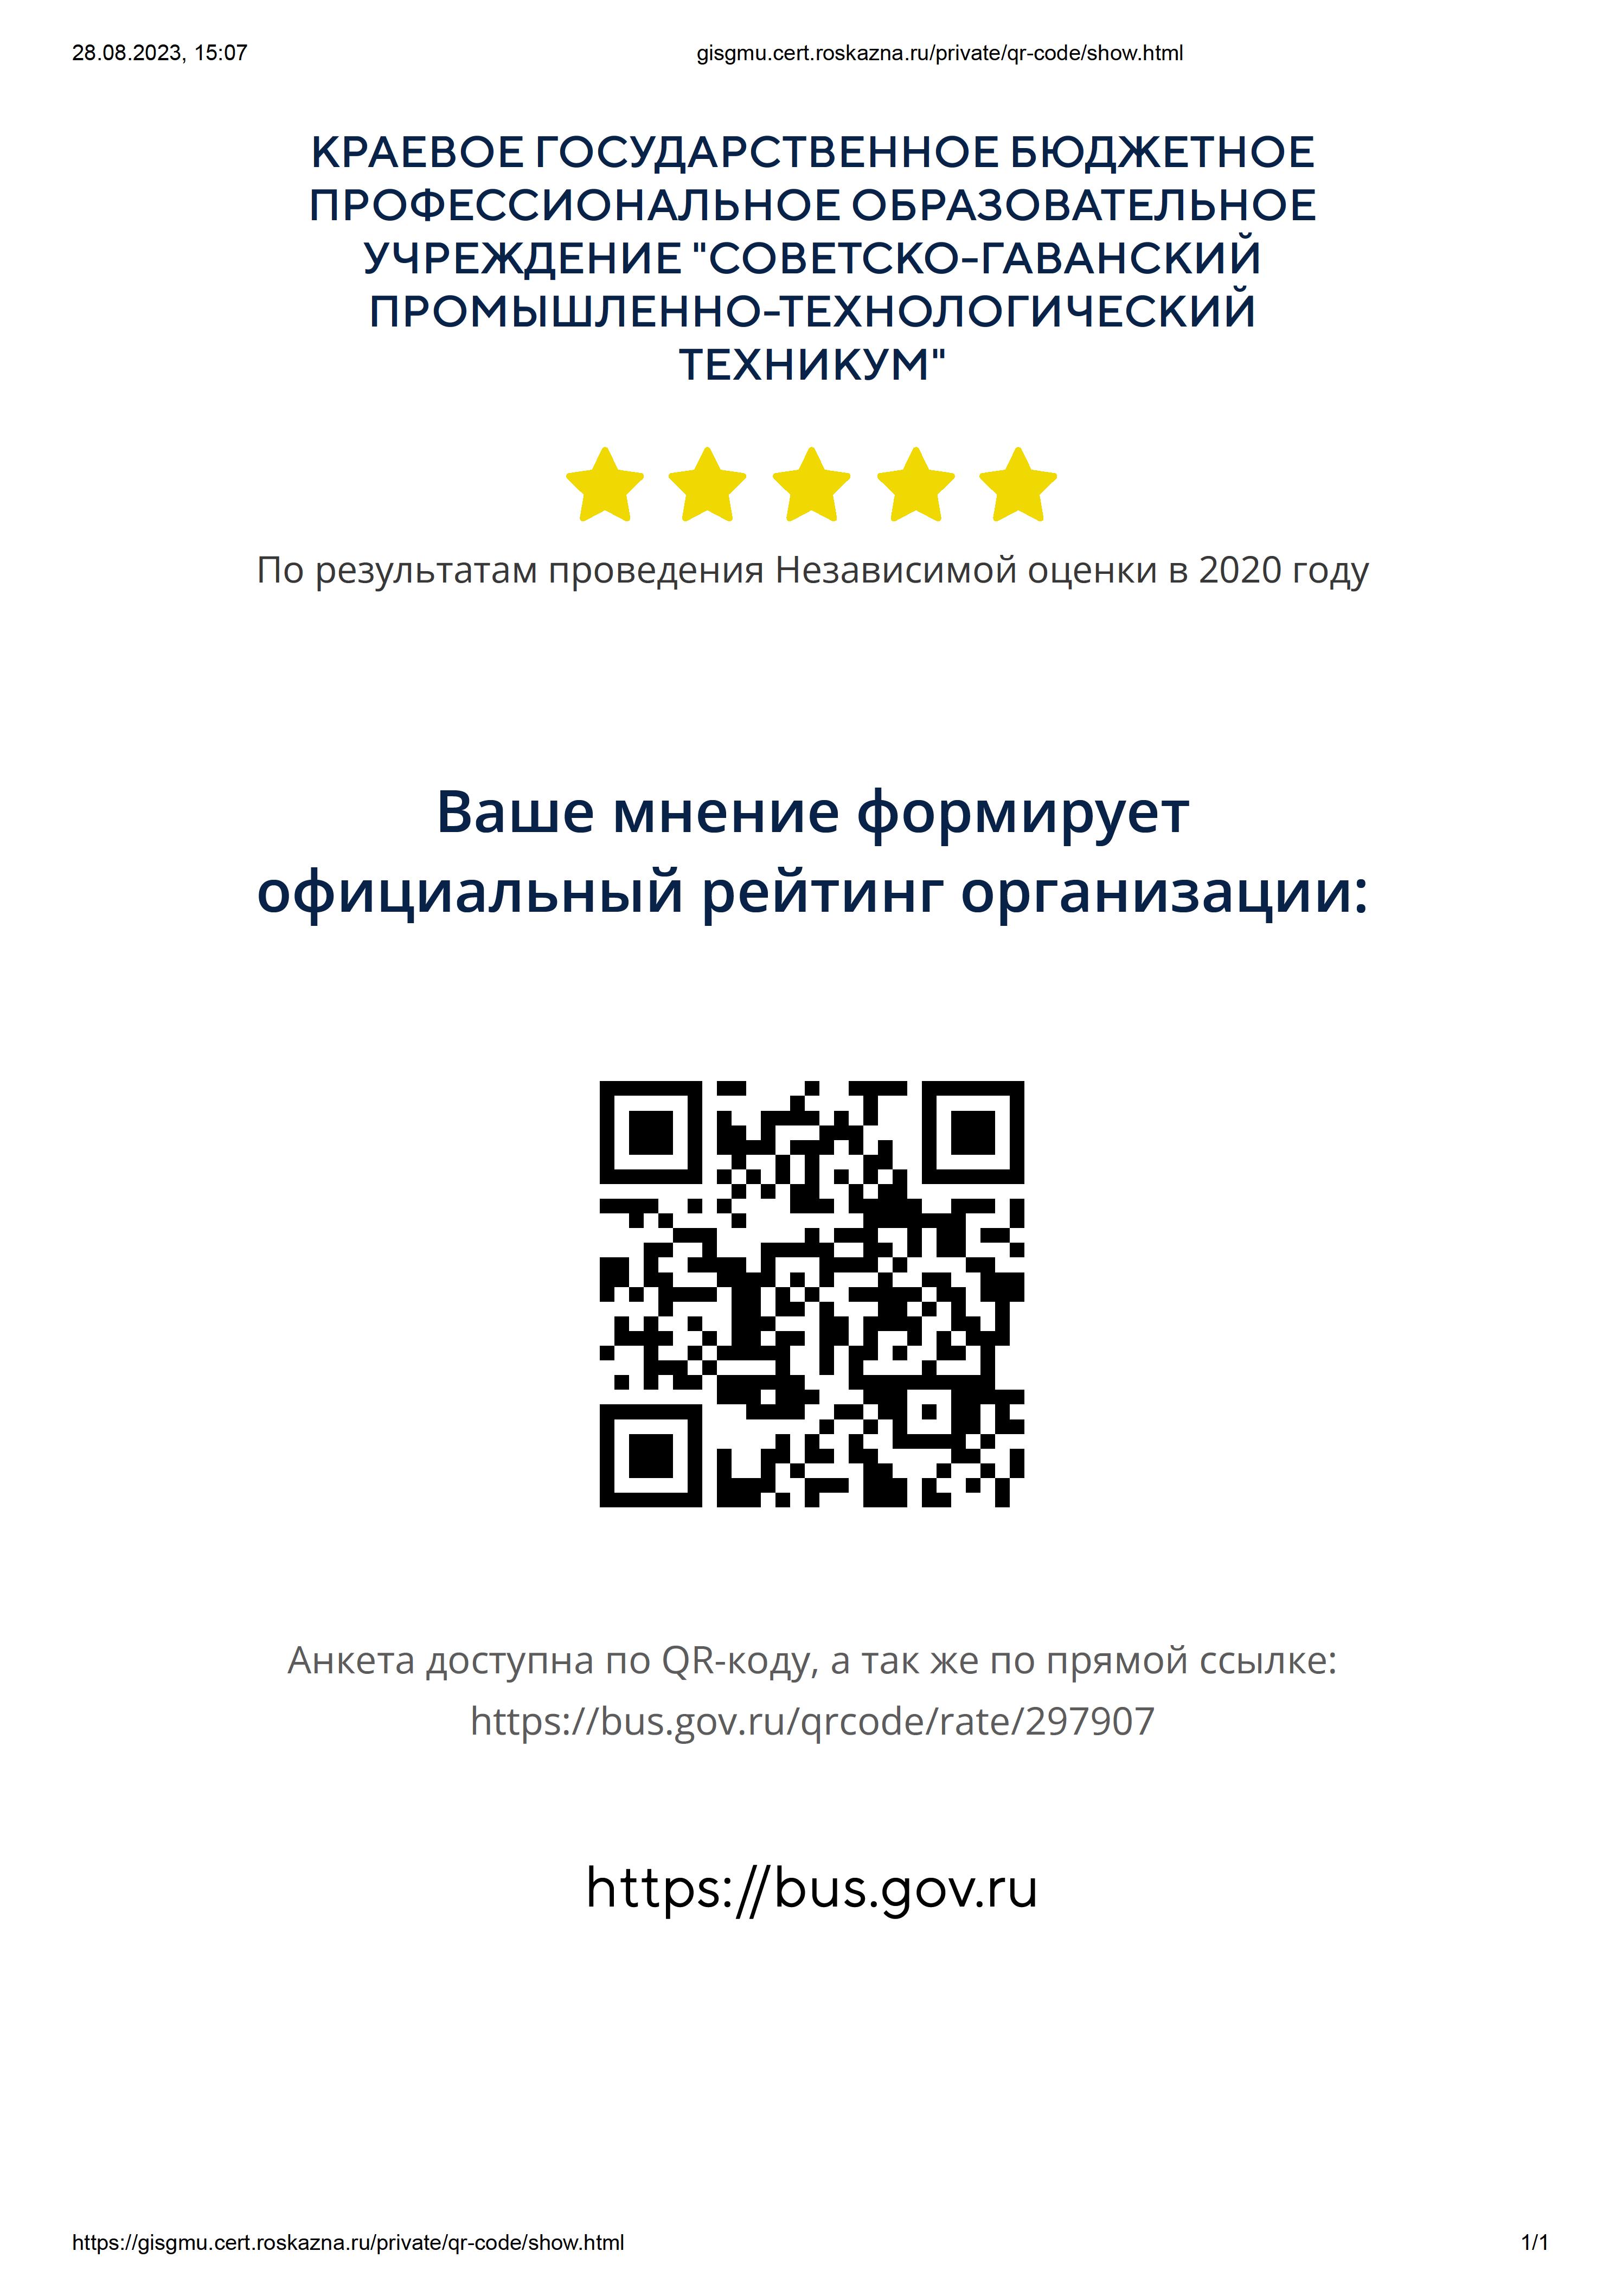 gisgmu.cert.roskazna.ru private qr-code show